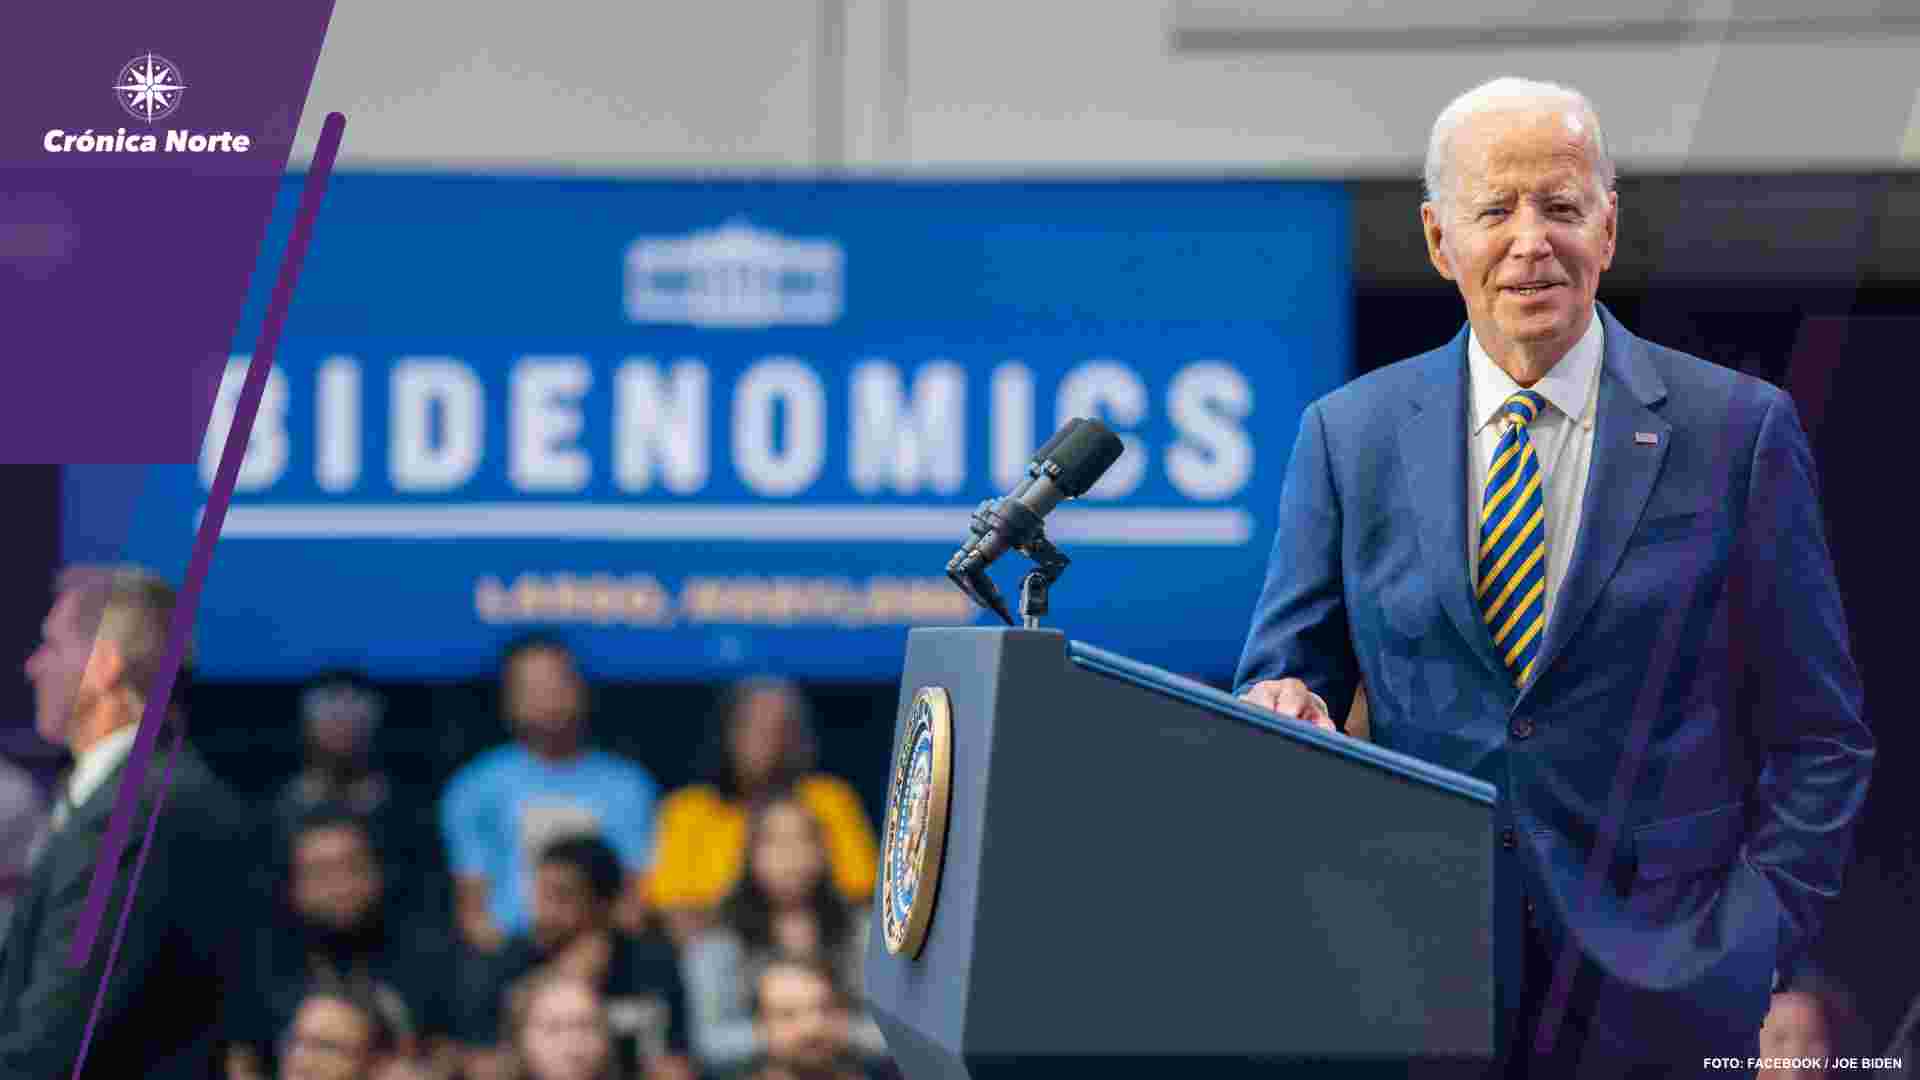 Republicanos inician investigación contra Joe Biden